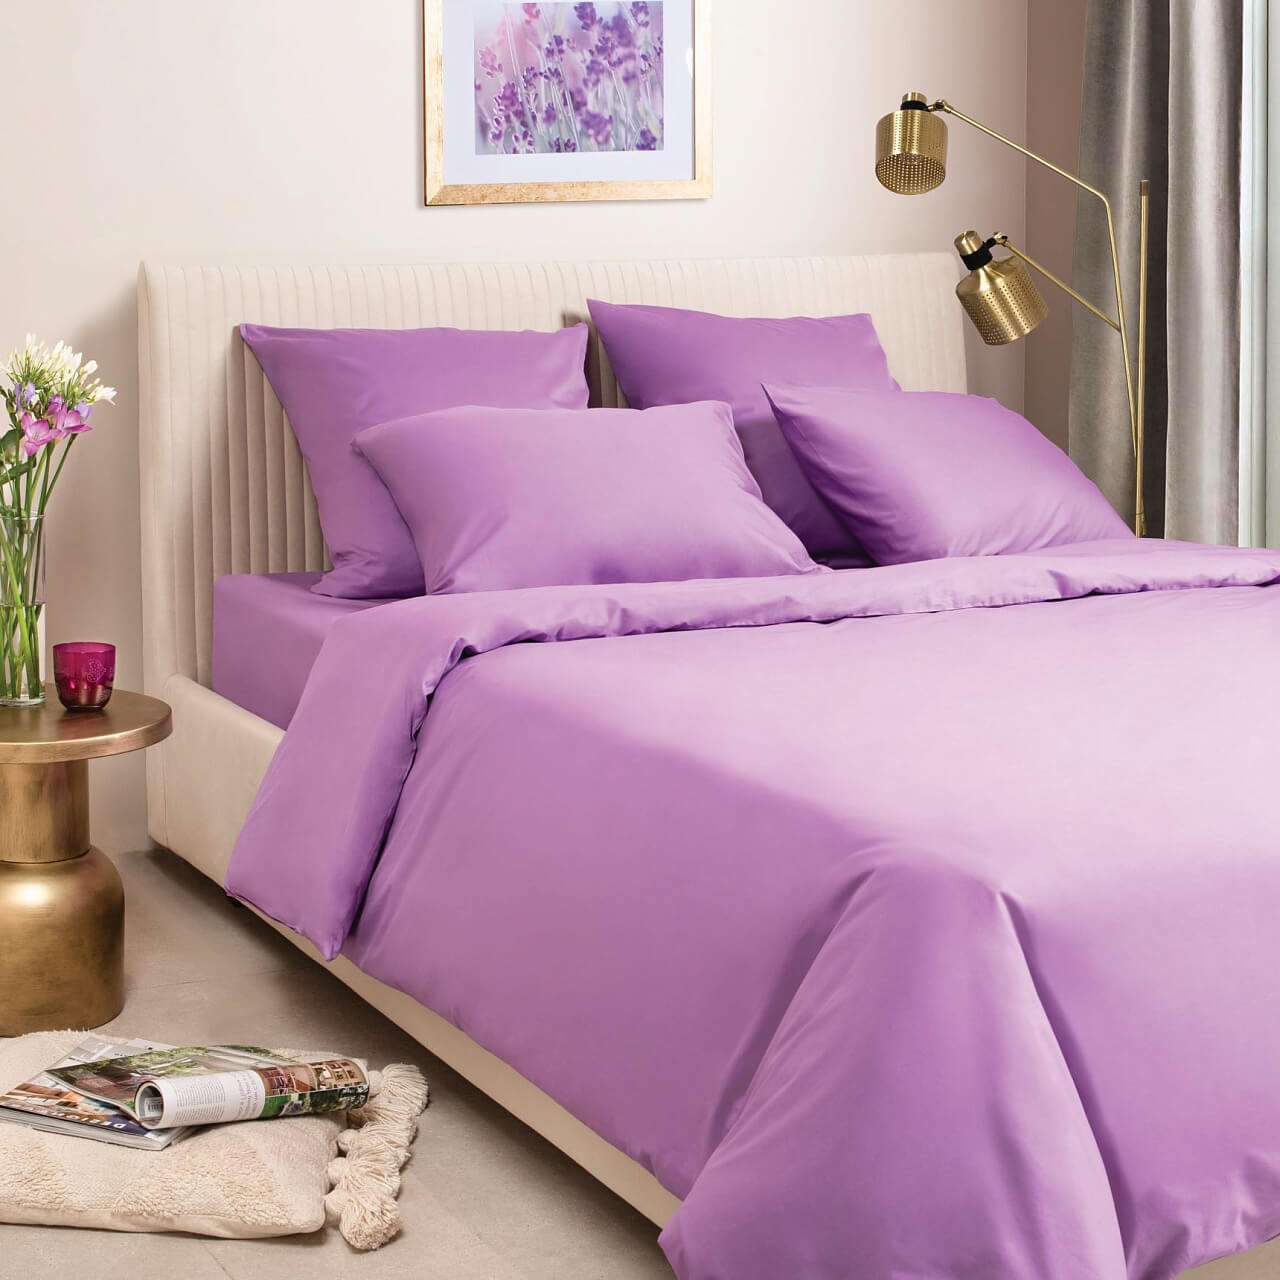 Фиолетовый постельное бельё из сатина Моноспейс Ecotex евро